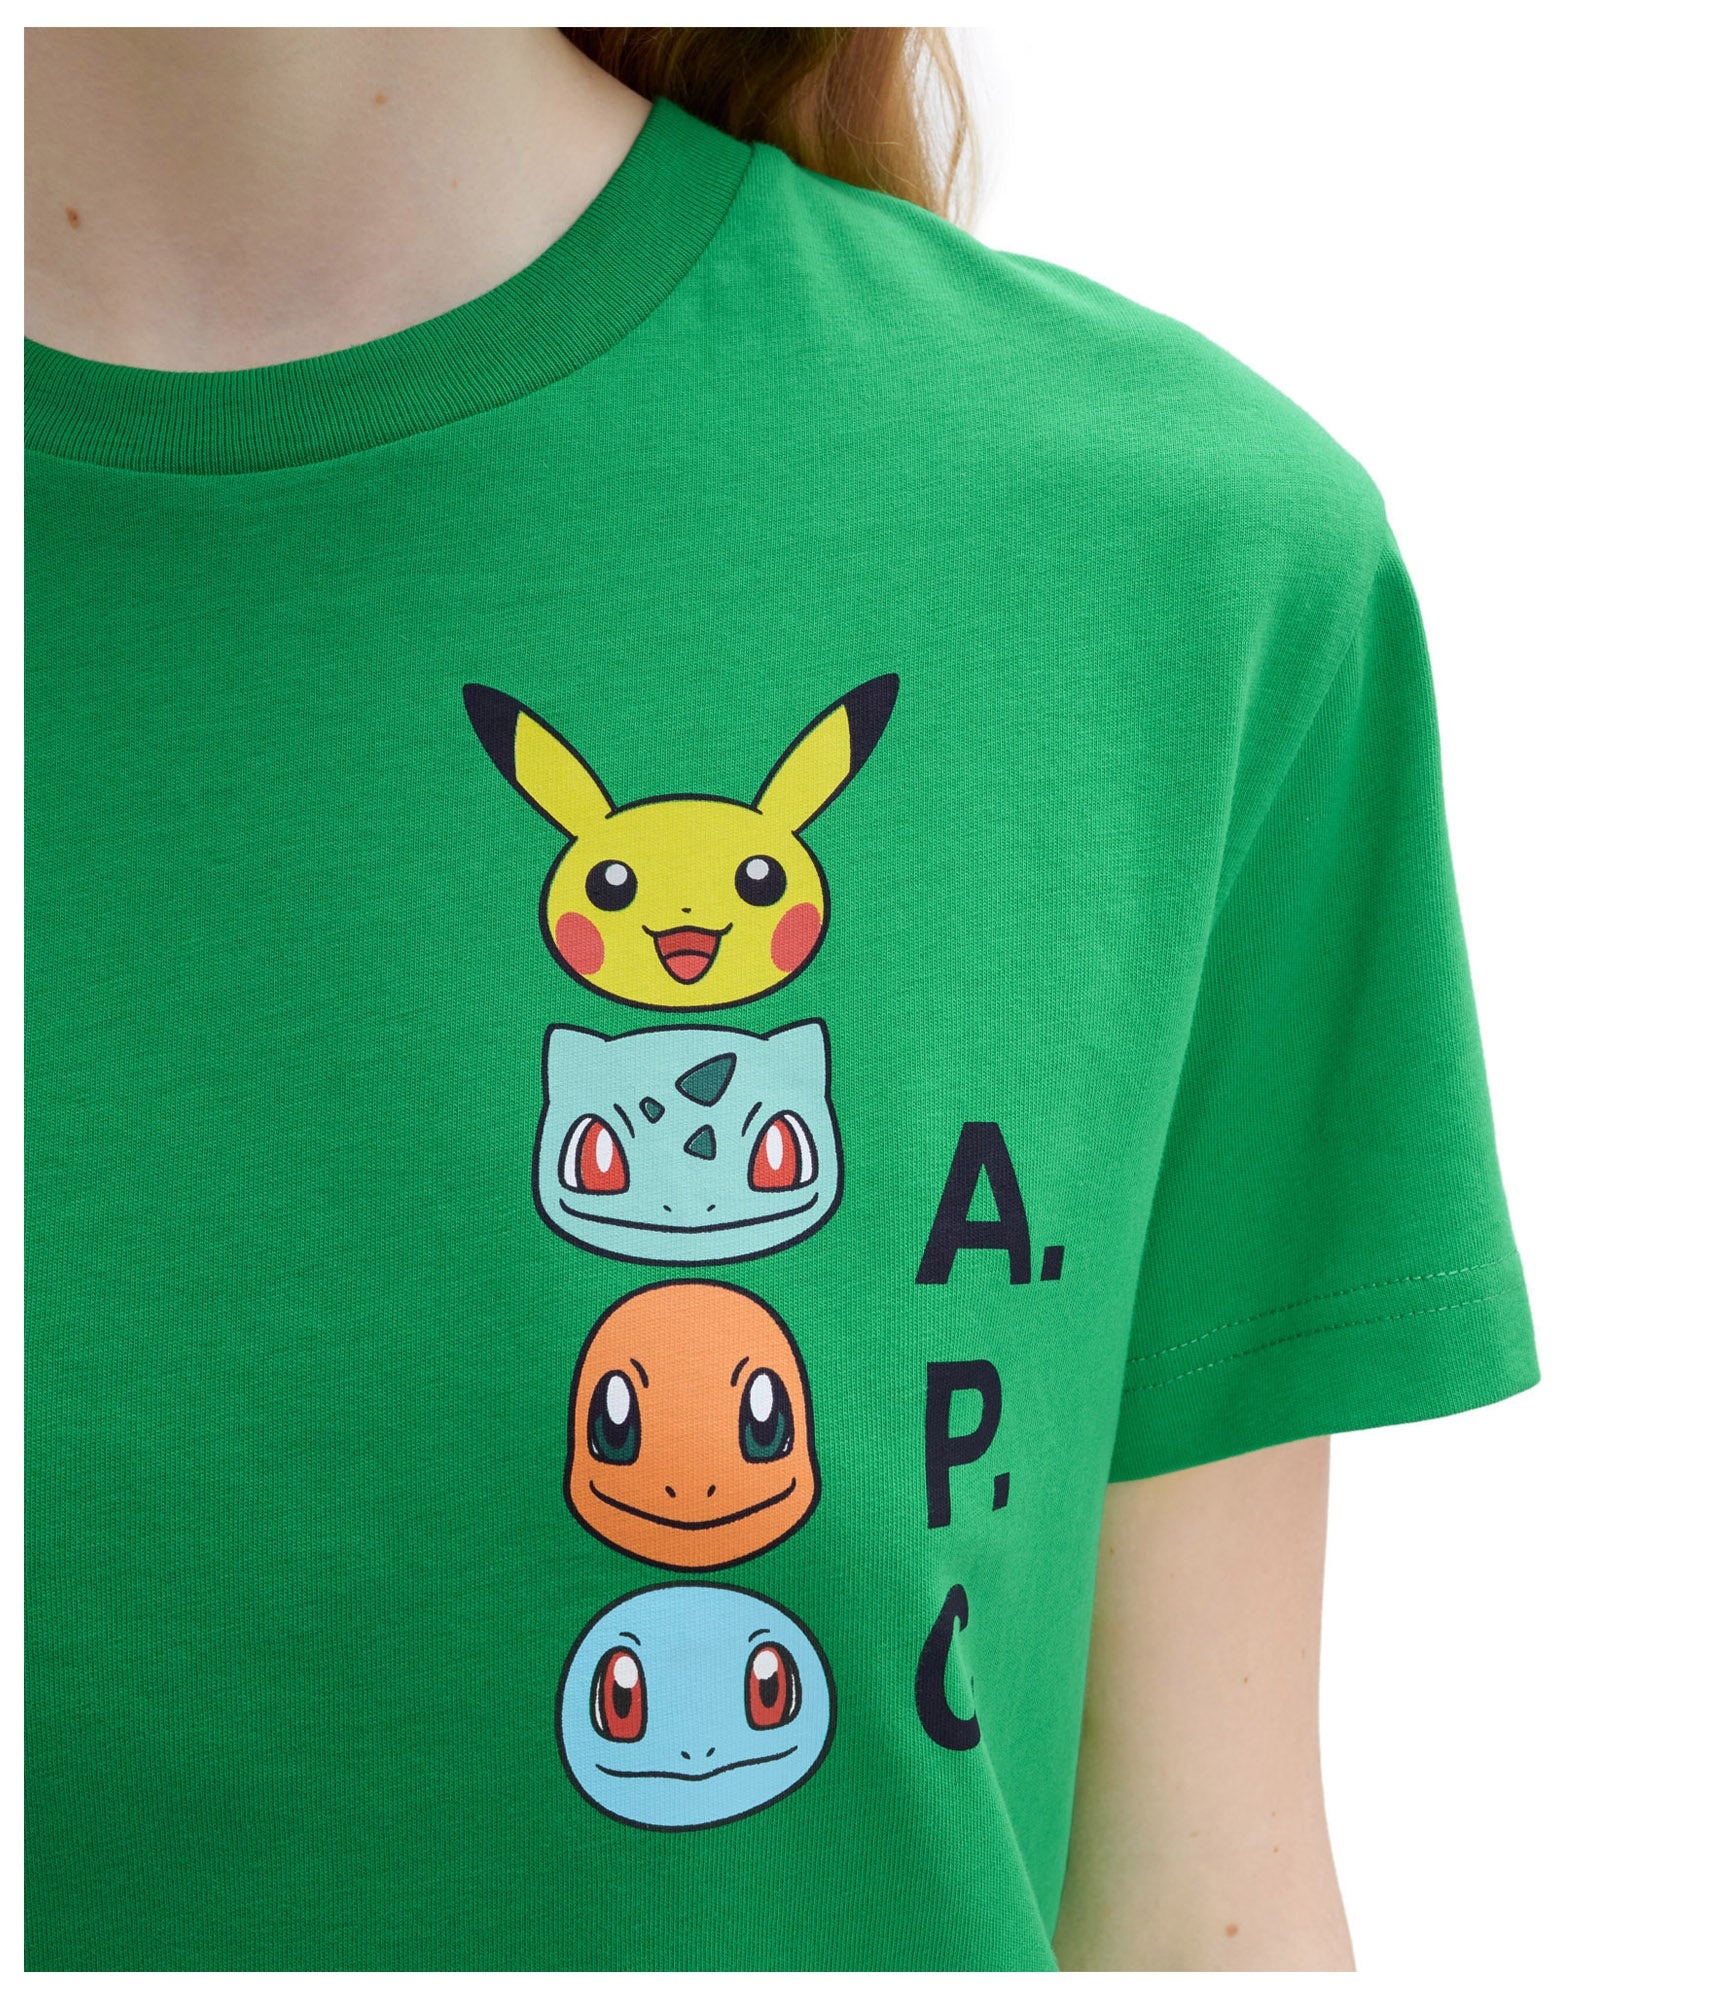 Pokémon The Portrait T-shirt - 5